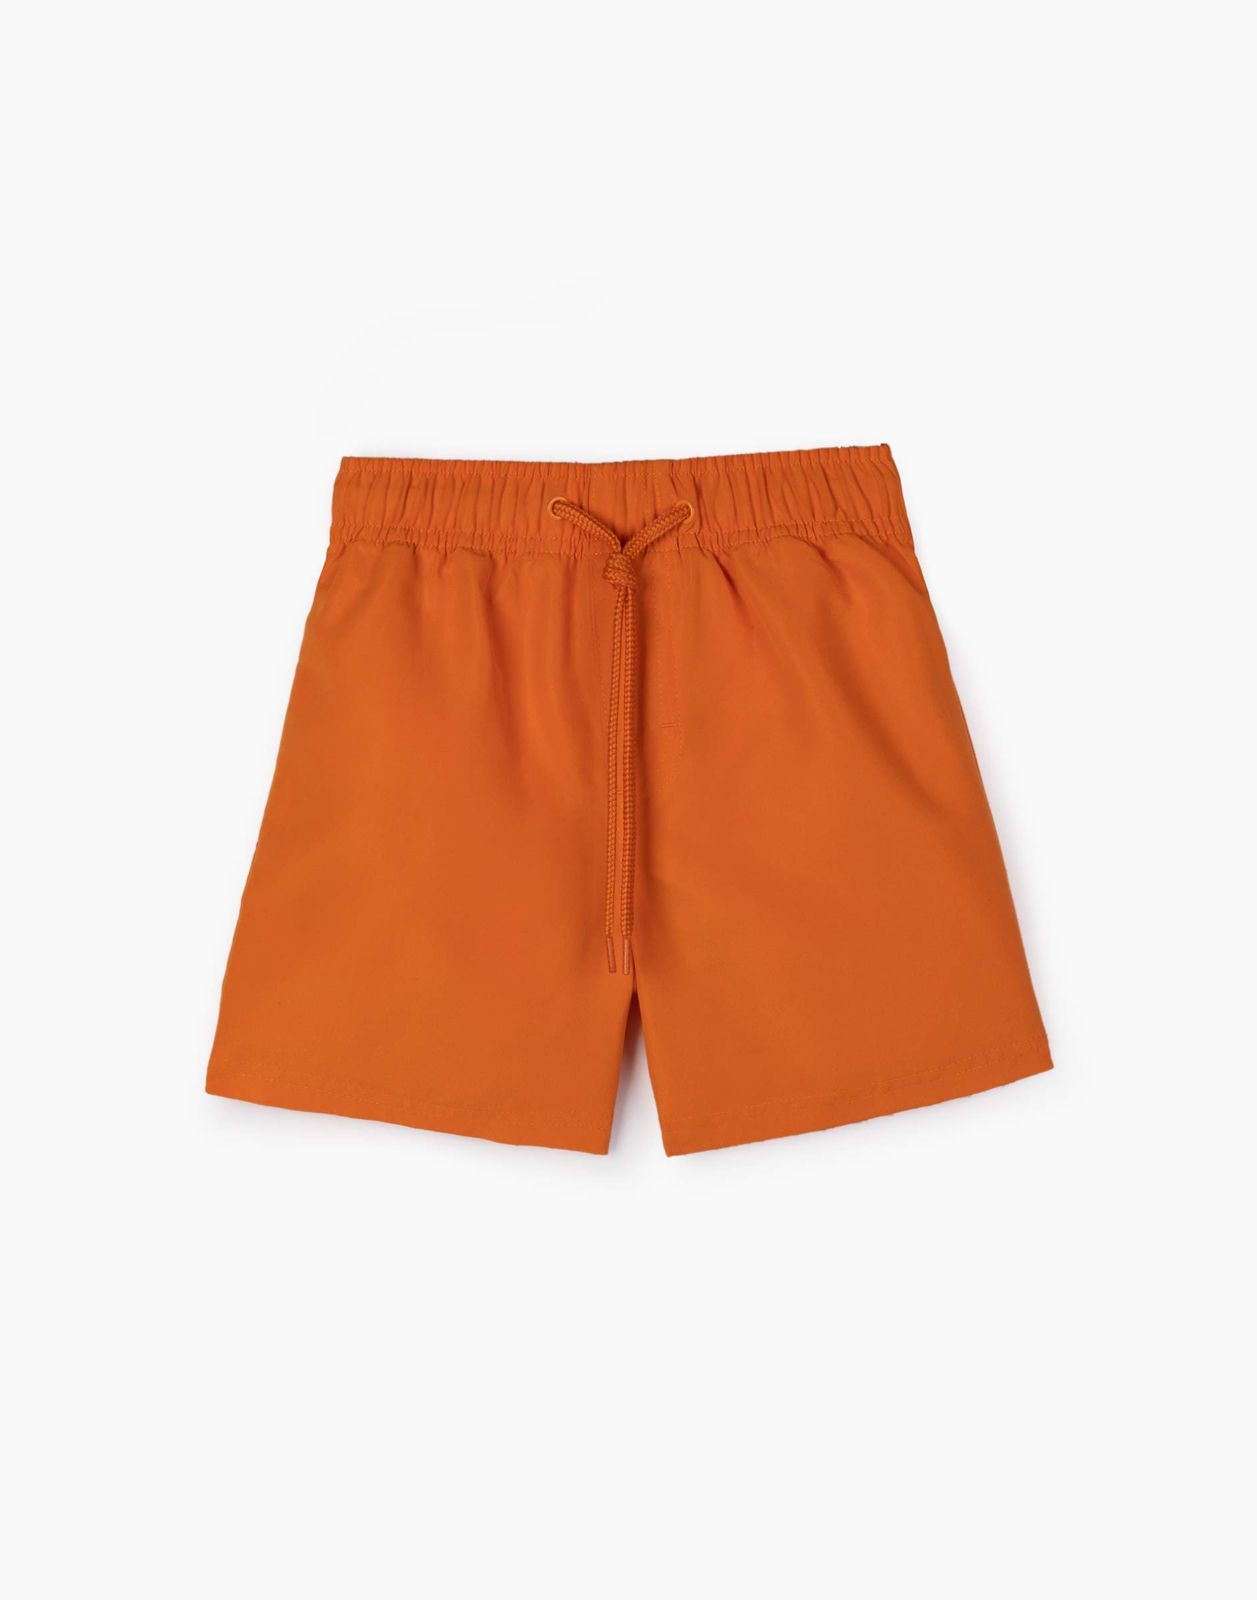 Пляжные шорты для мальчика Gloria Jeans BSM000720 оранжевый 4-6л/116 бейсболка для мальчика minaku оранжевый зеленый р р 52 см